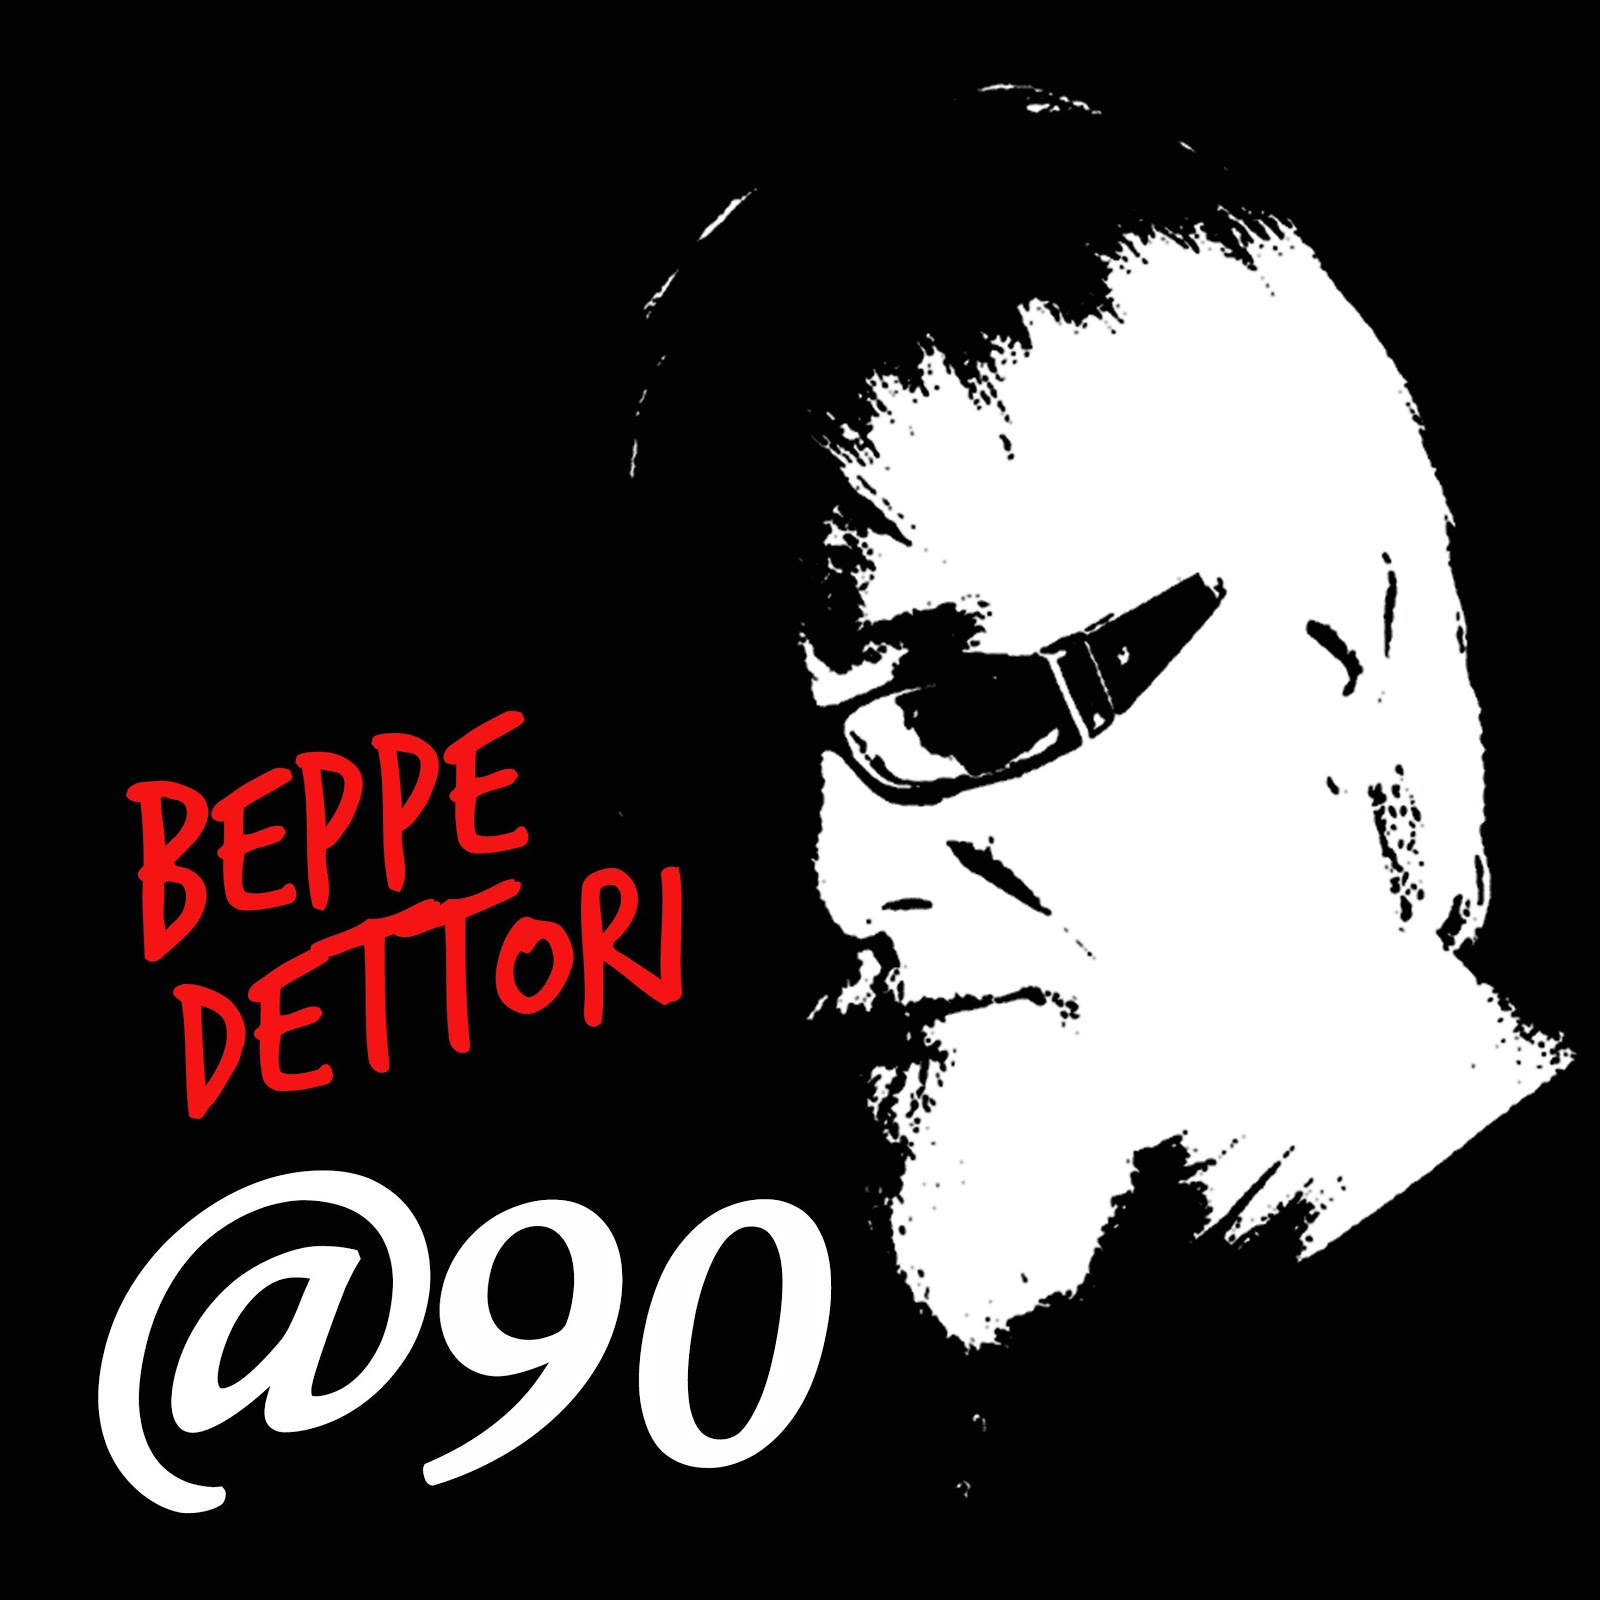 BEPPE DETTORI “MENTRE PASSA” è il secondo singolo estratto dall’album @90